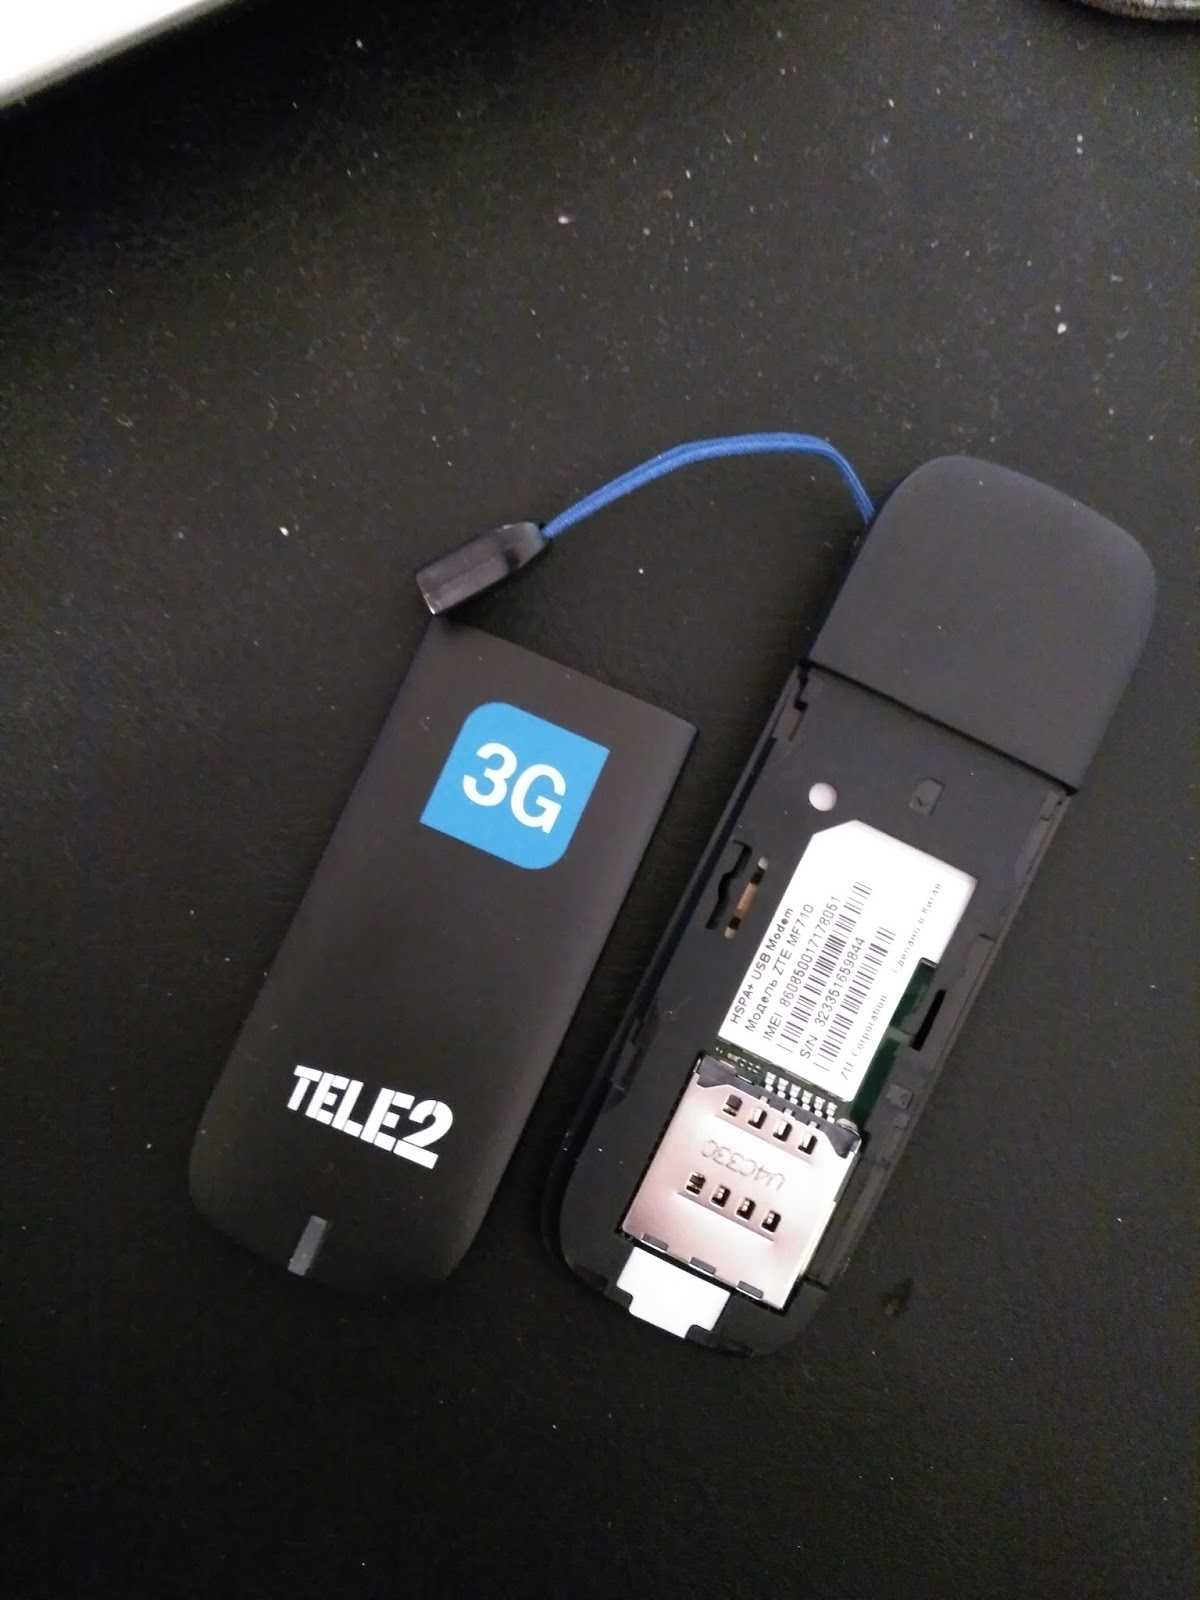 Теле2 4g купить. Tele2 USB модем 4g. Модем 4g теле2 ZTE. USB модем теле2 4g. USB модем tele2 4g ZTE mf833v.